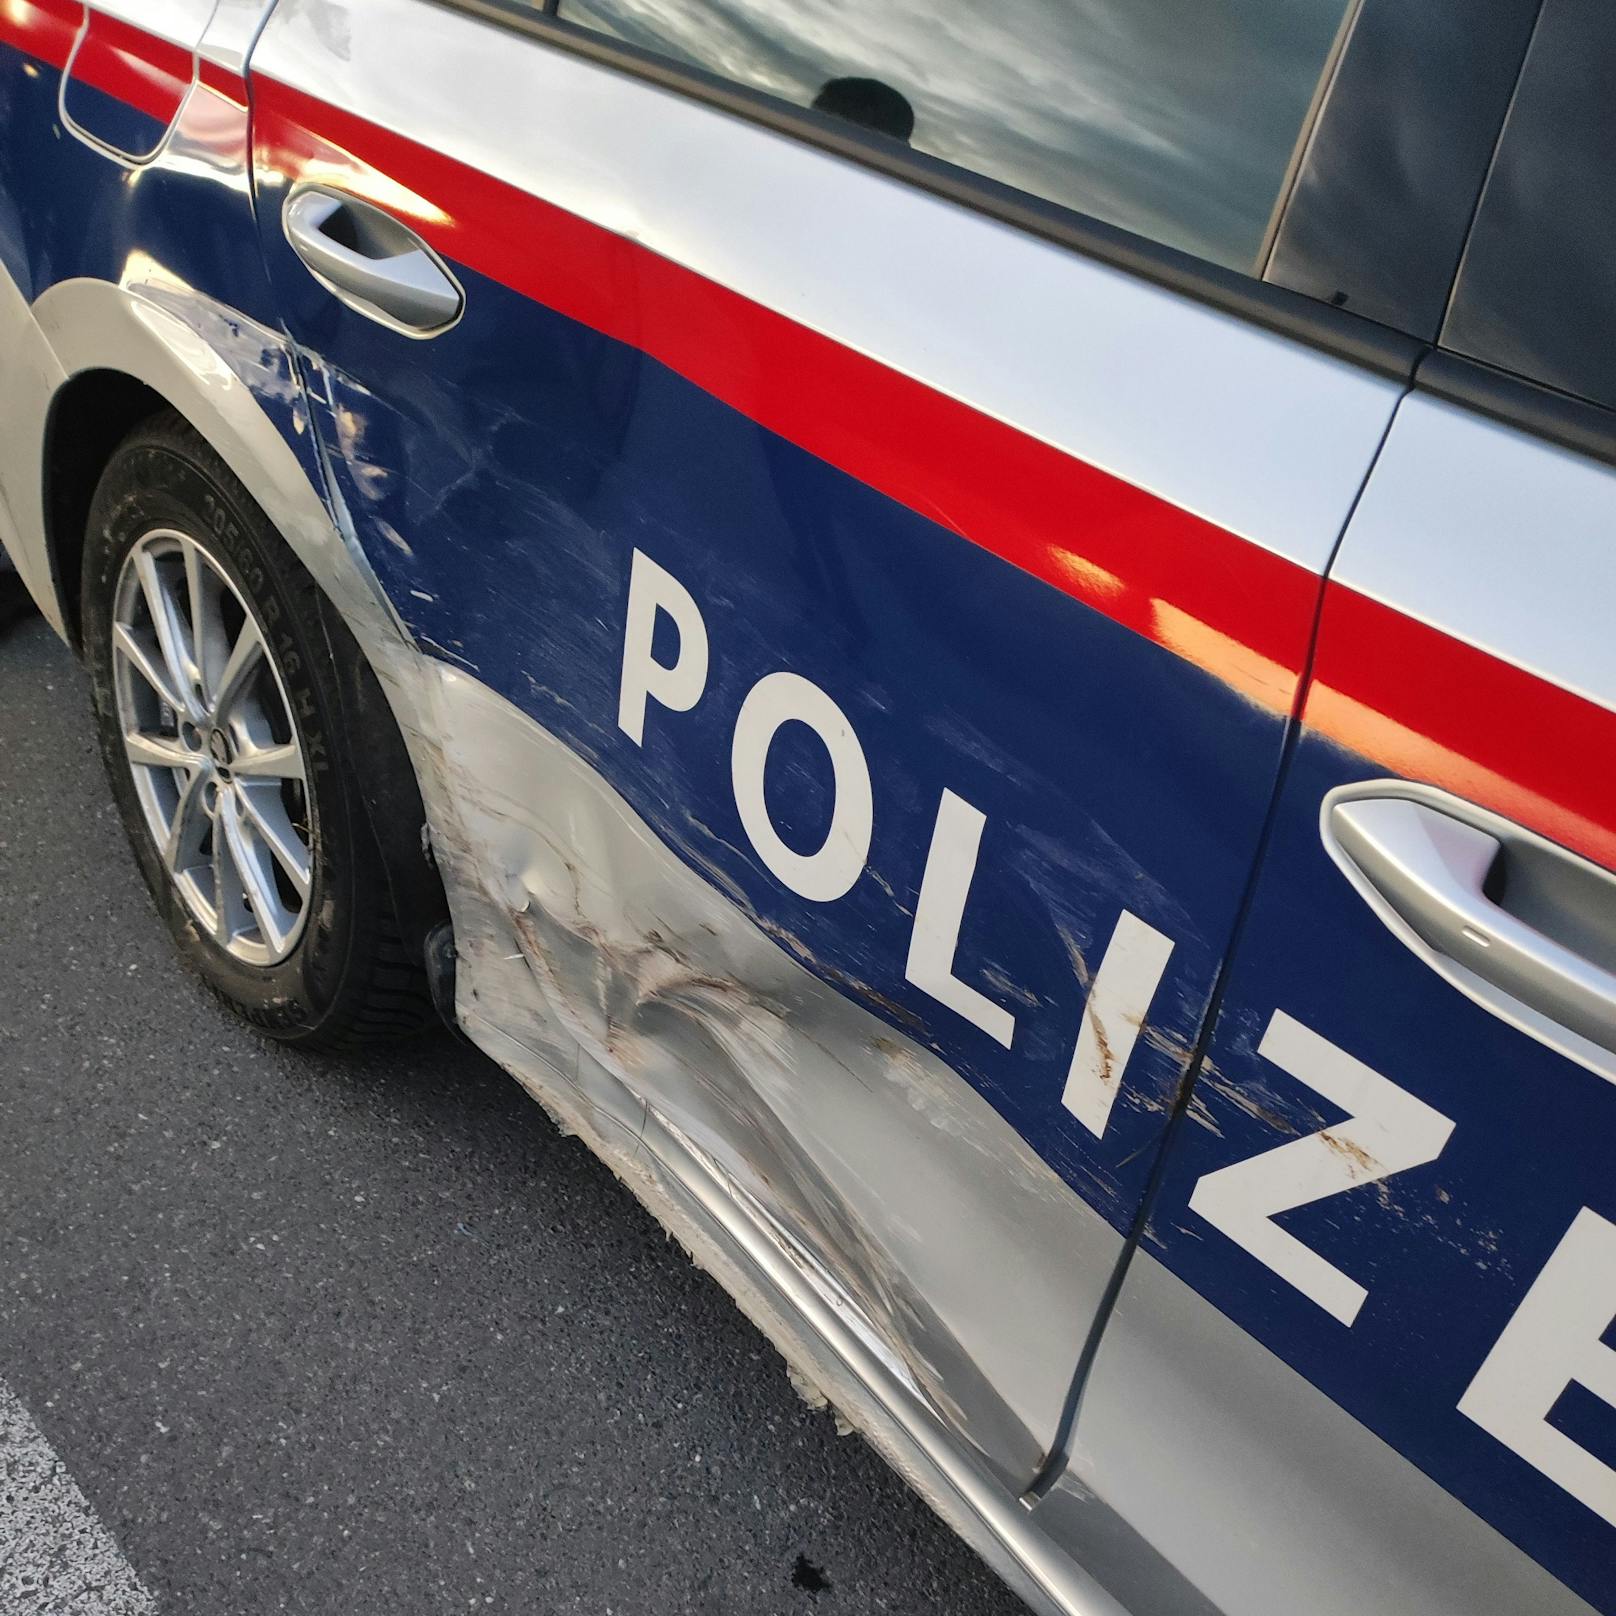 Eine wilde Verfolgungsjagd mit der Polizei lieferte sich am 15. Oktober 2022 ein 29-Jähriger aus Lustenau. Die irre Flucht endete mit einem Crash und einem demolierten Polizeiauto.